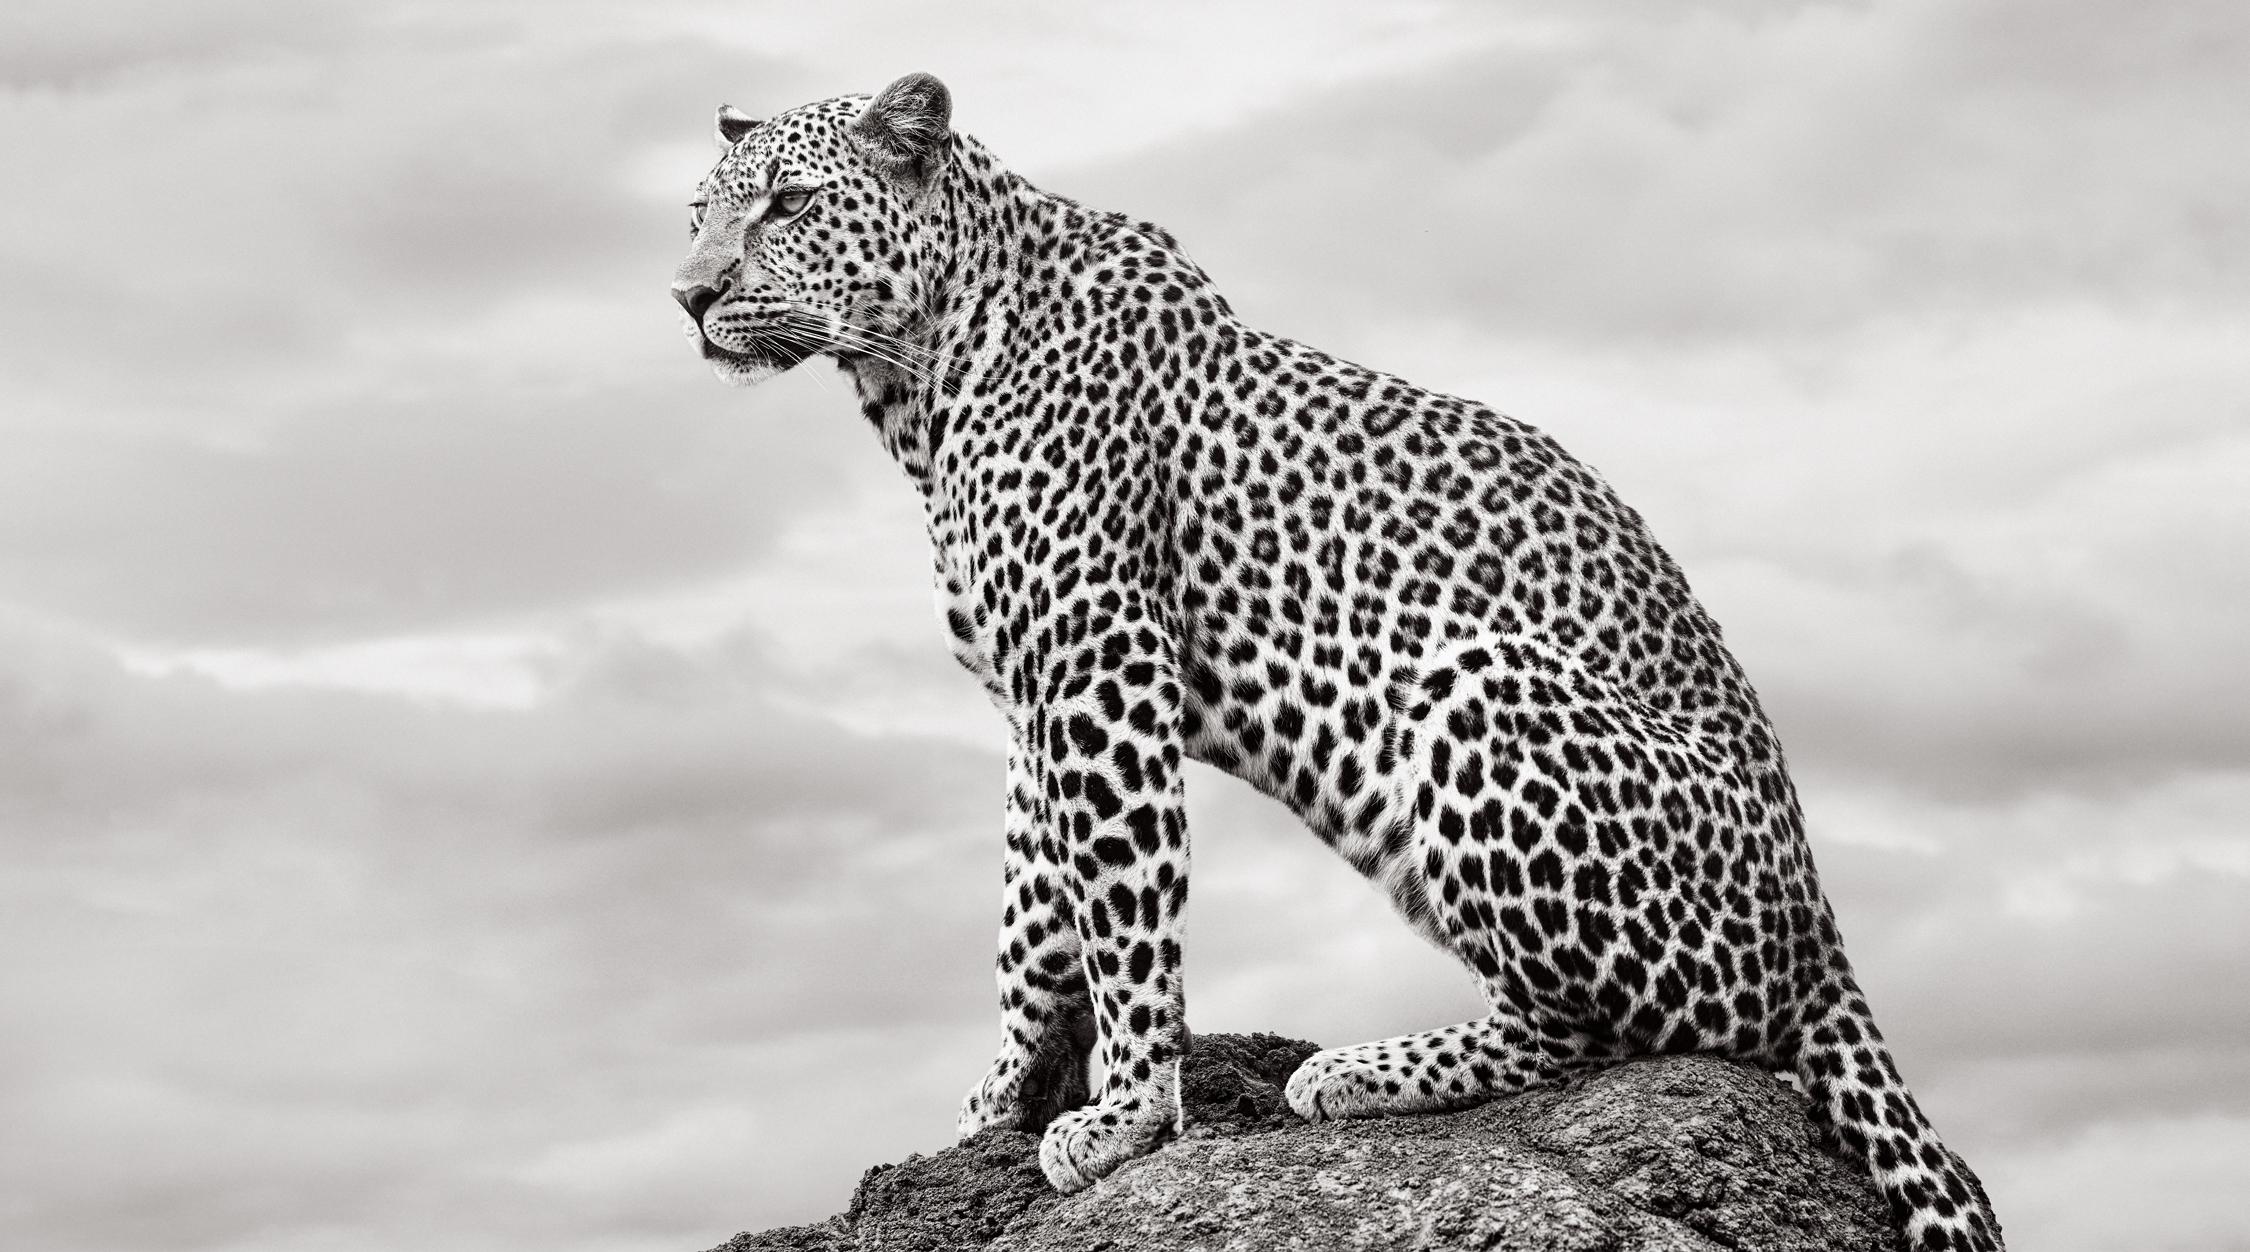 Drew Doggett Black and White Photograph – Epic Porträt eines Leoparden auf einem Fels auf der rechten Seite, der auf das rechte Bild blickt